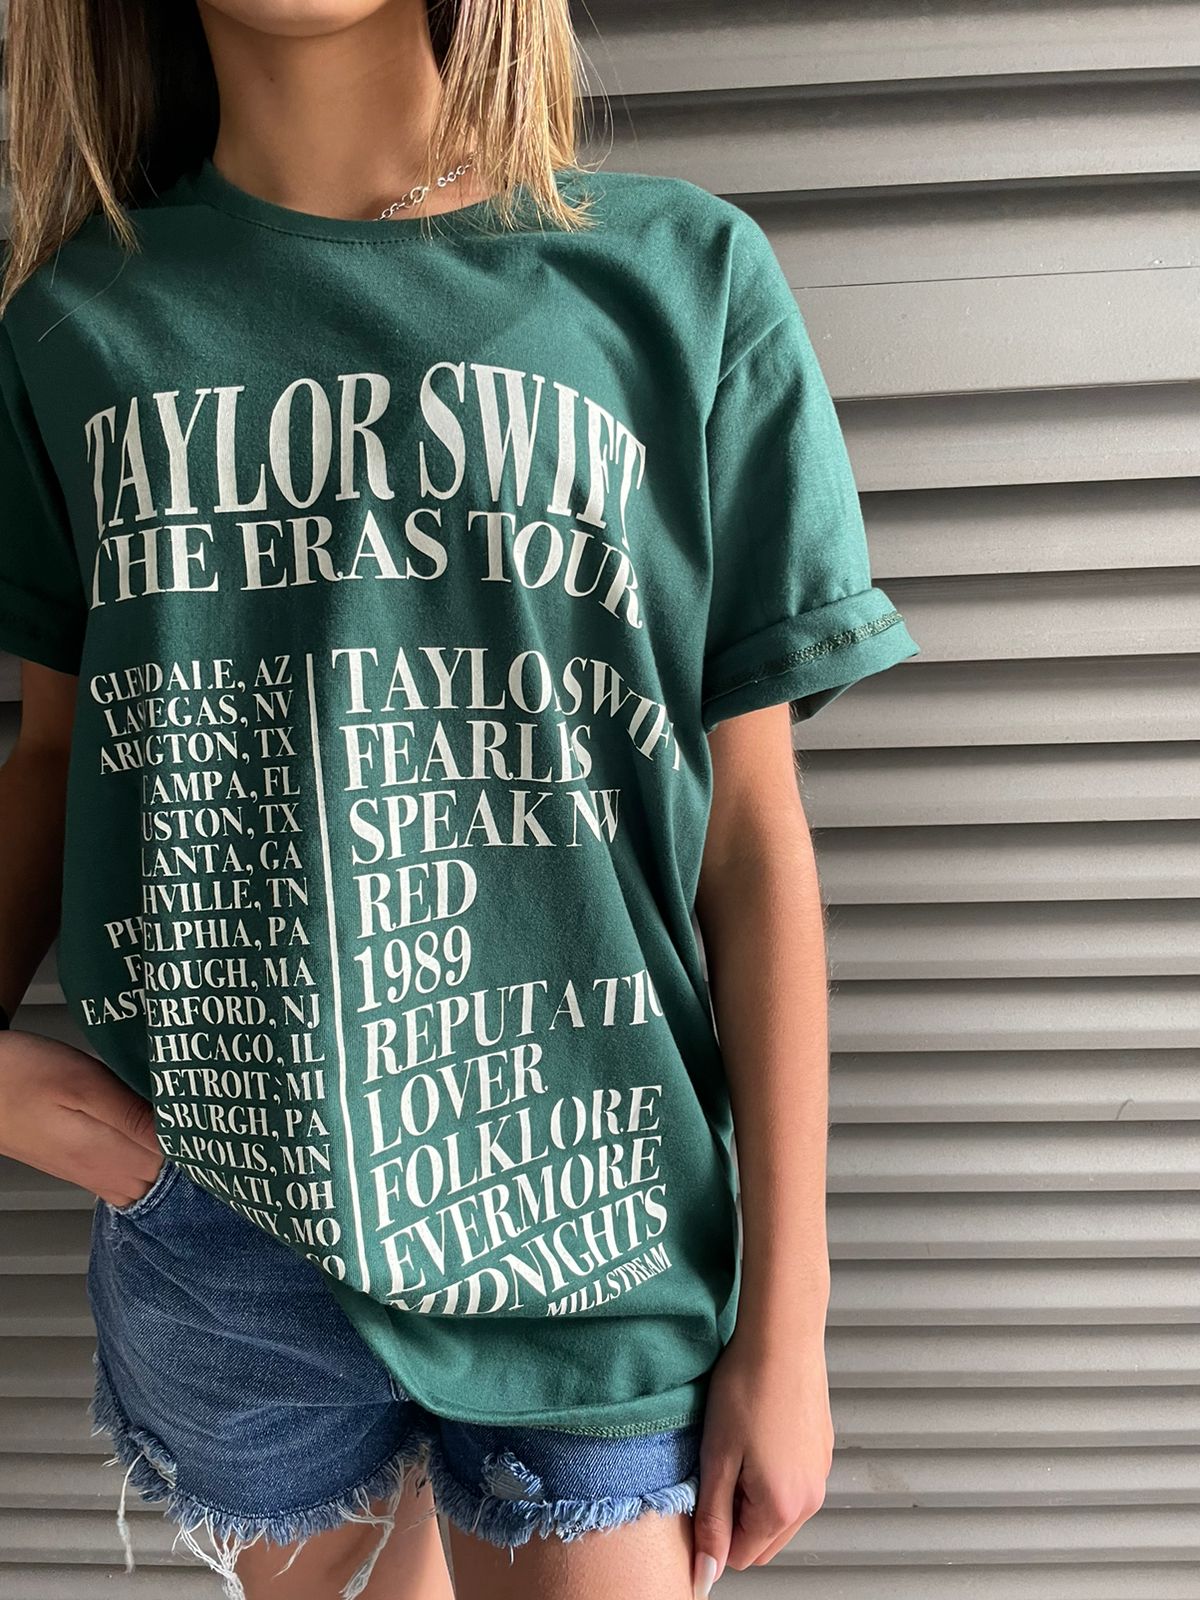 Remerón Taylor Swift - Eras Tour